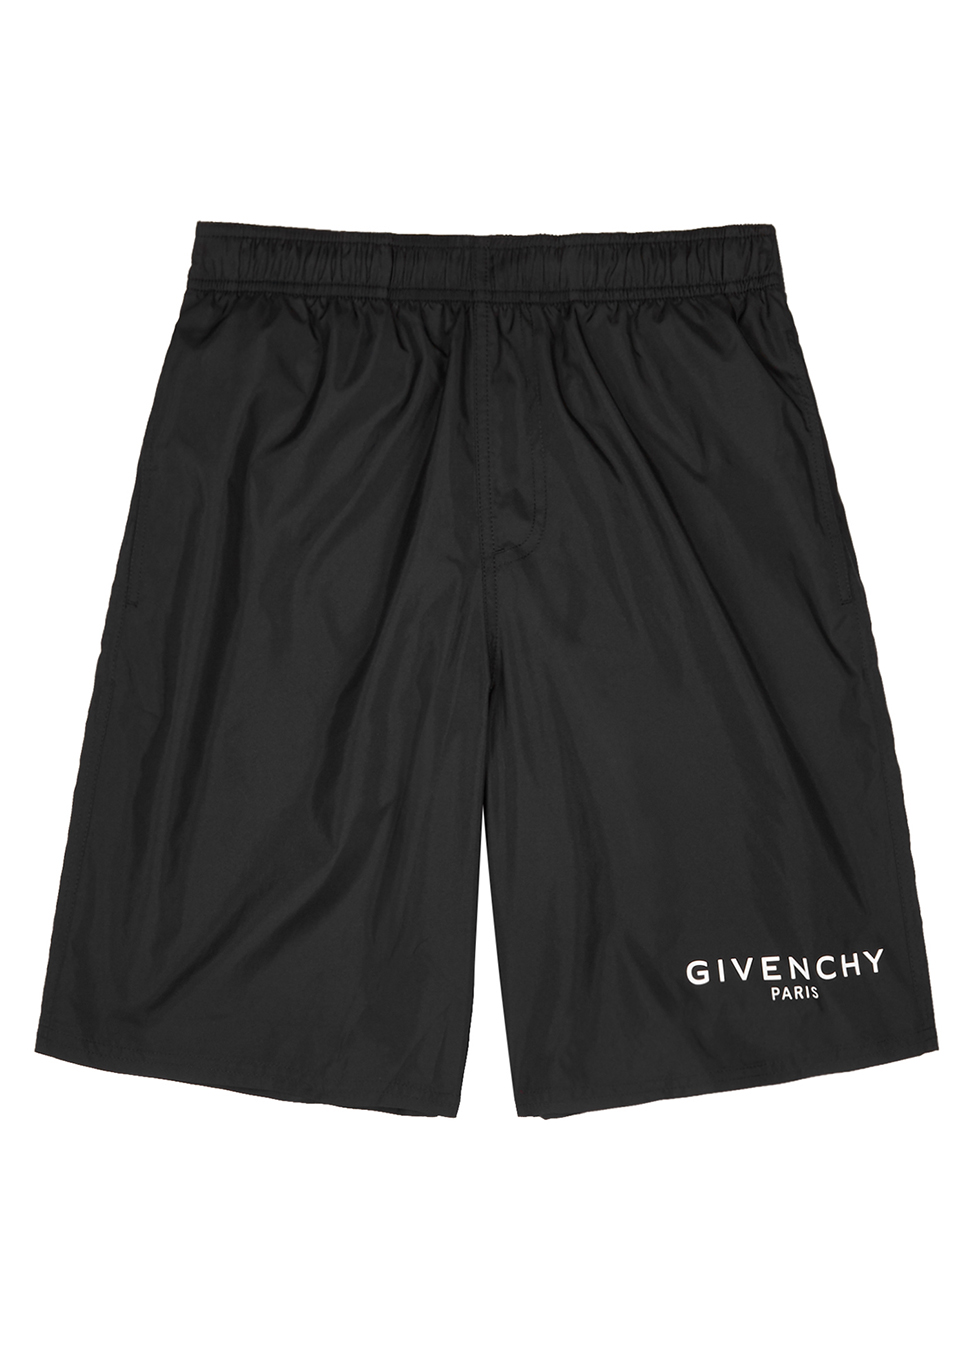 givenchy shorts black